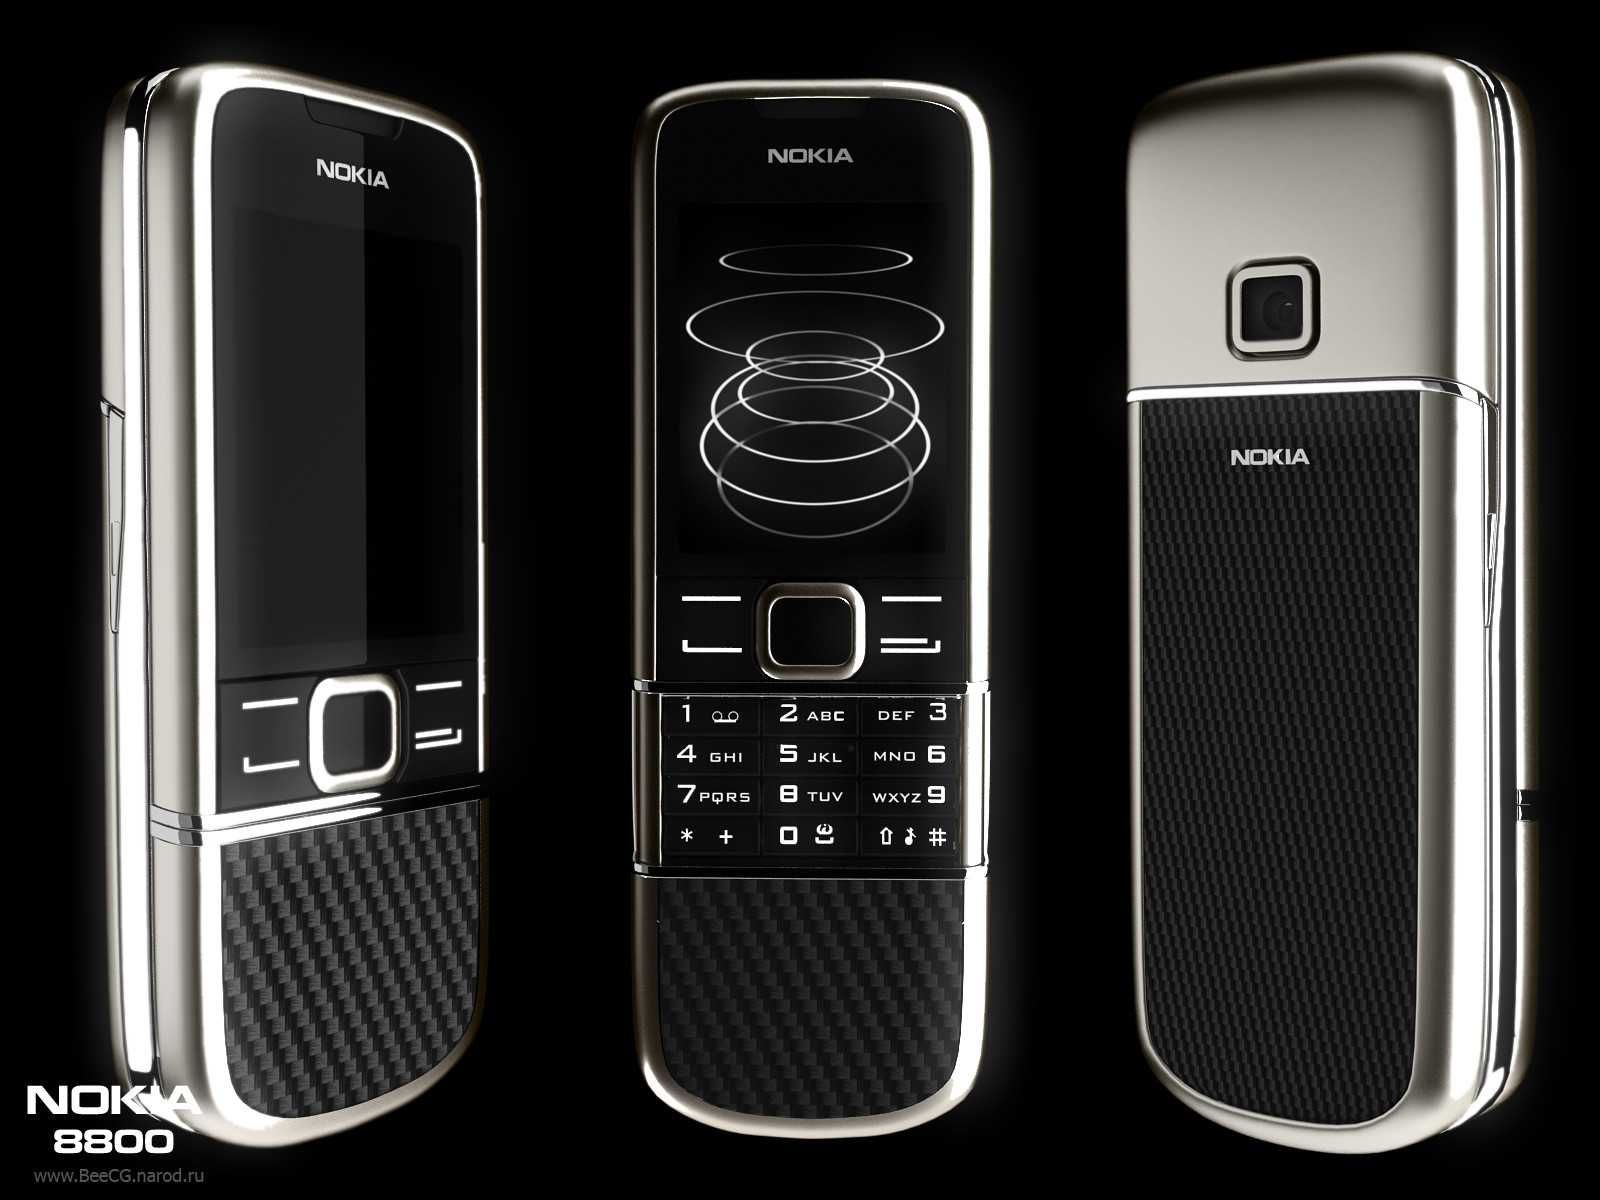 Nokia 8800 Carbon Arte Commercial là một video giới thiệu về sản phẩm Nokia 8800 Carbon Arte cực kỳ ấn tượng với những hình ảnh đẹp và âm nhạc sống động. Xem video này để hiểu rõ hơn về sản phẩm và cảm nhận được sự đẳng cấp của Nokia 8800 Carbon Arte.